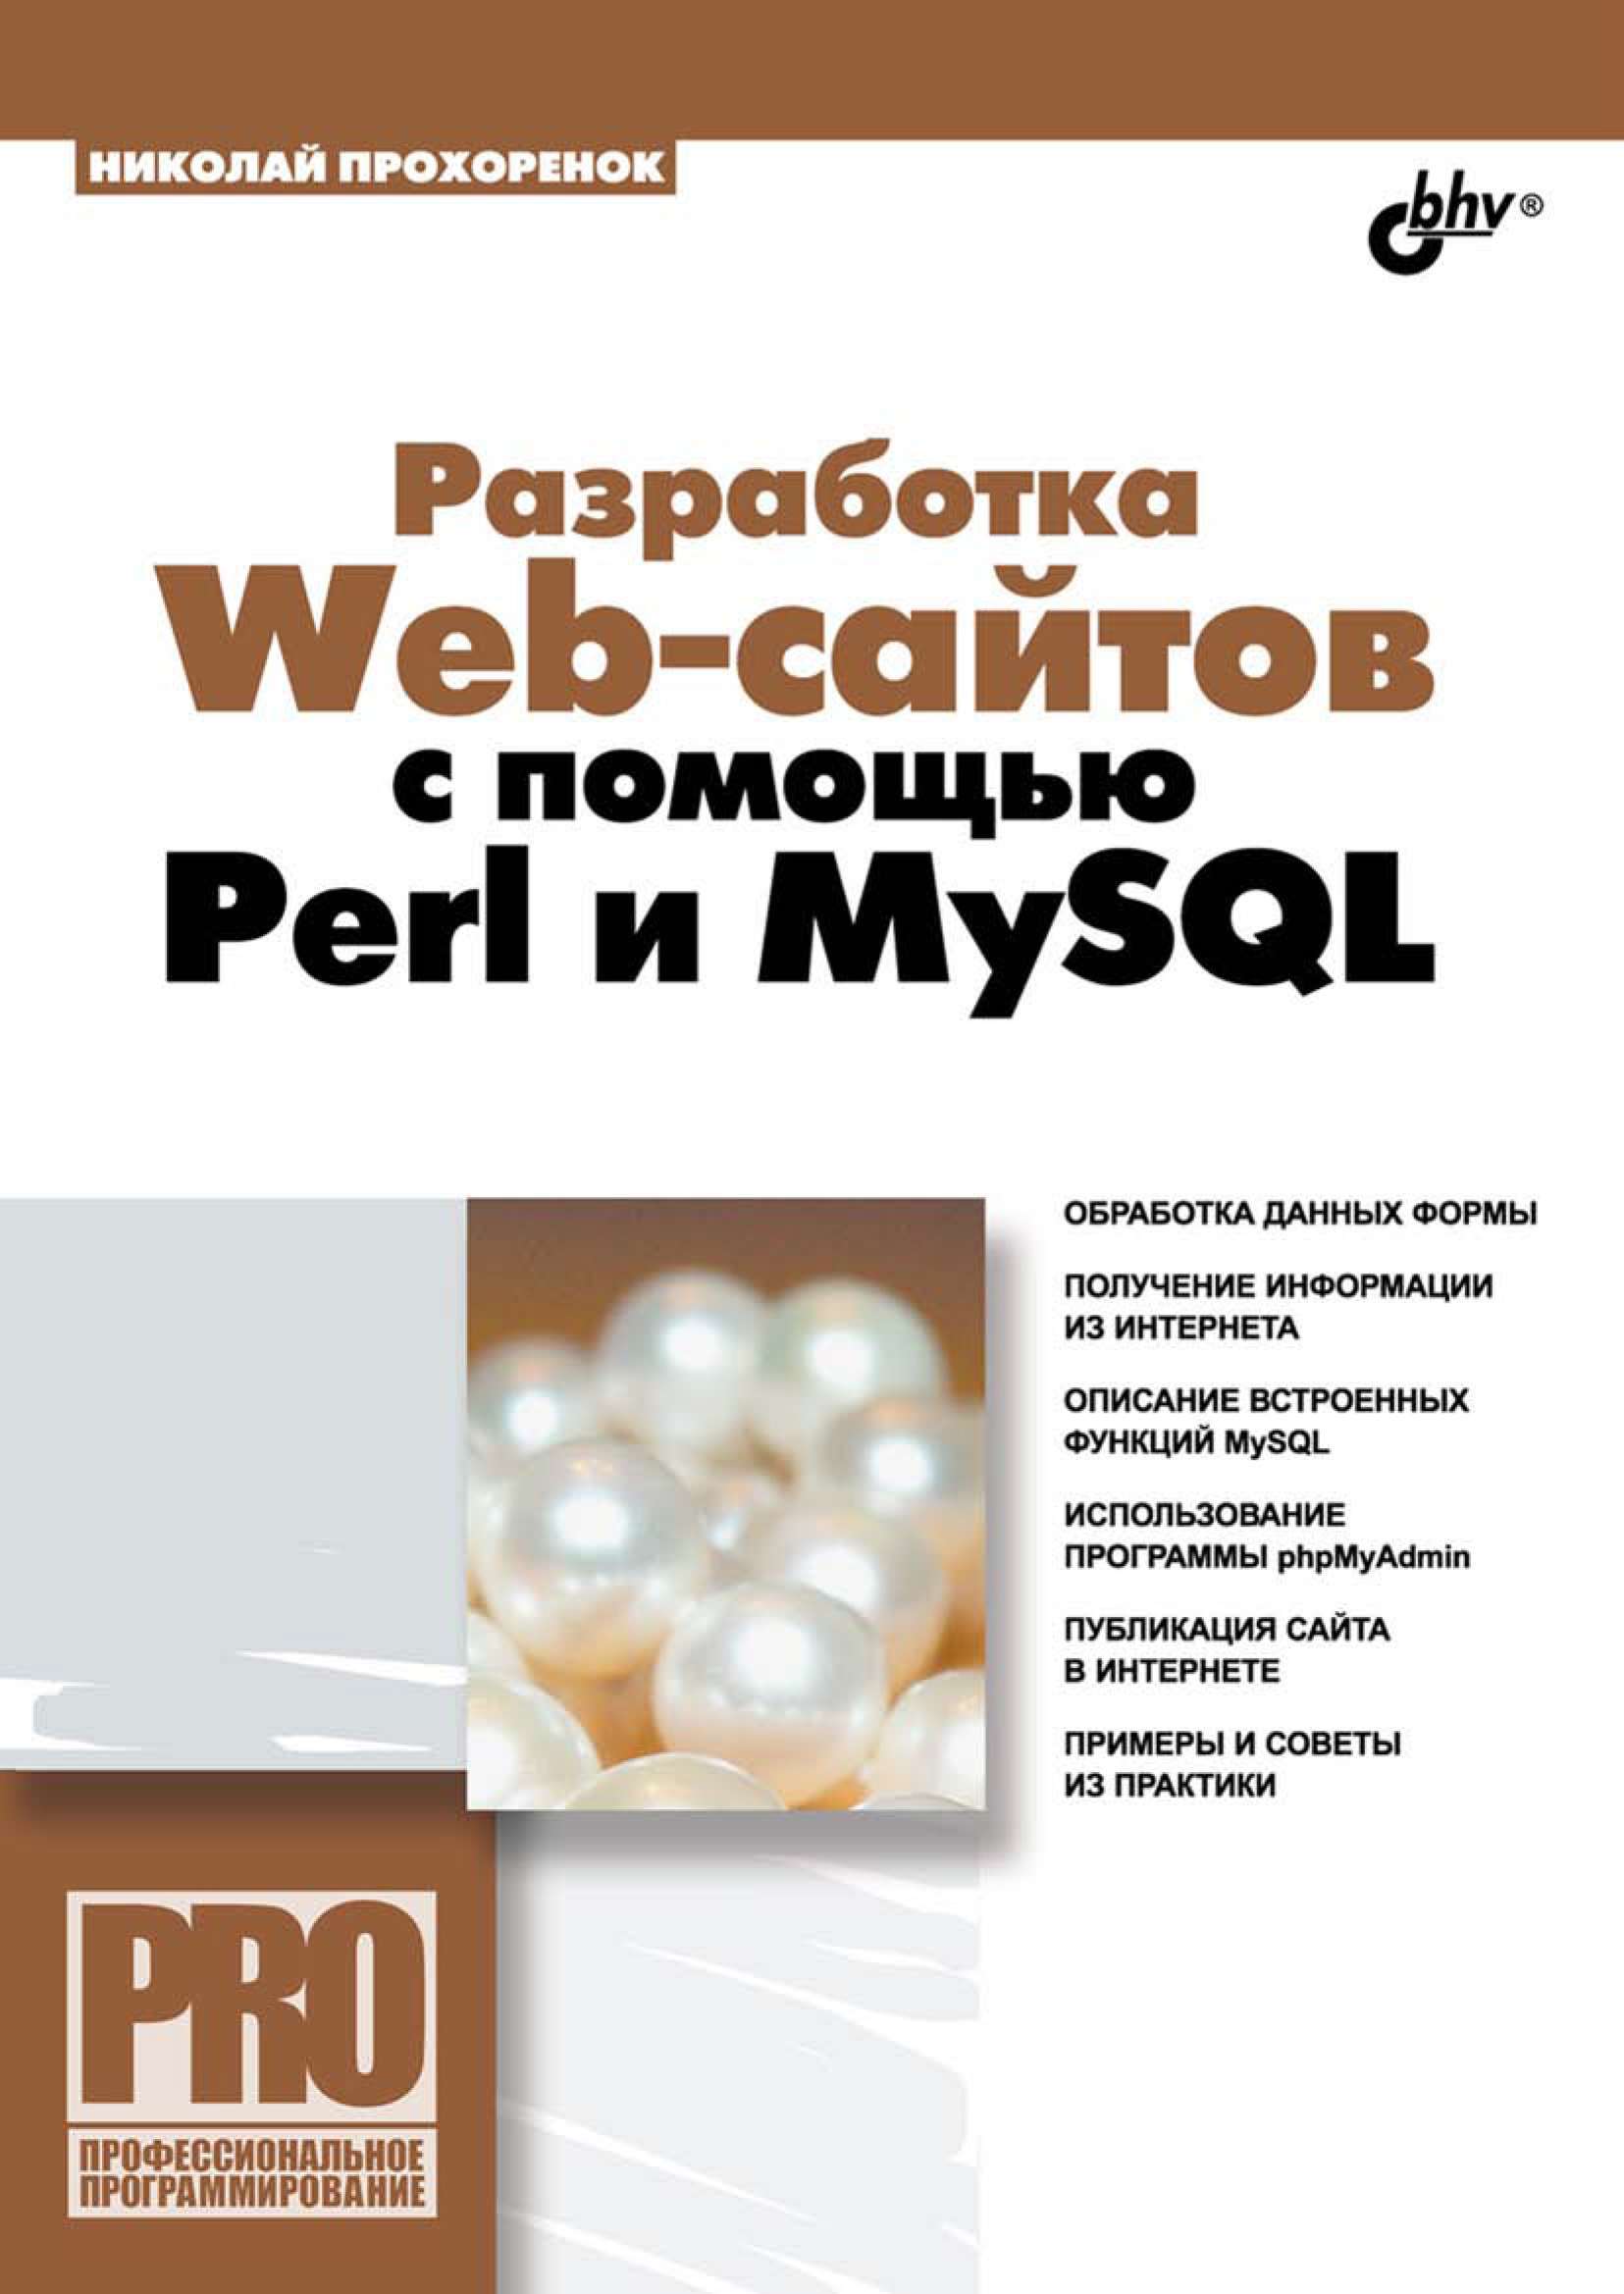 Книга Профессиональное программирование Разработка Web-сайтов с помощью Perl и MySQL созданная Николай Прохоренок может относится к жанру базы данных, интернет, программирование. Стоимость электронной книги Разработка Web-сайтов с помощью Perl и MySQL с идентификатором 6997786 составляет 231.00 руб.